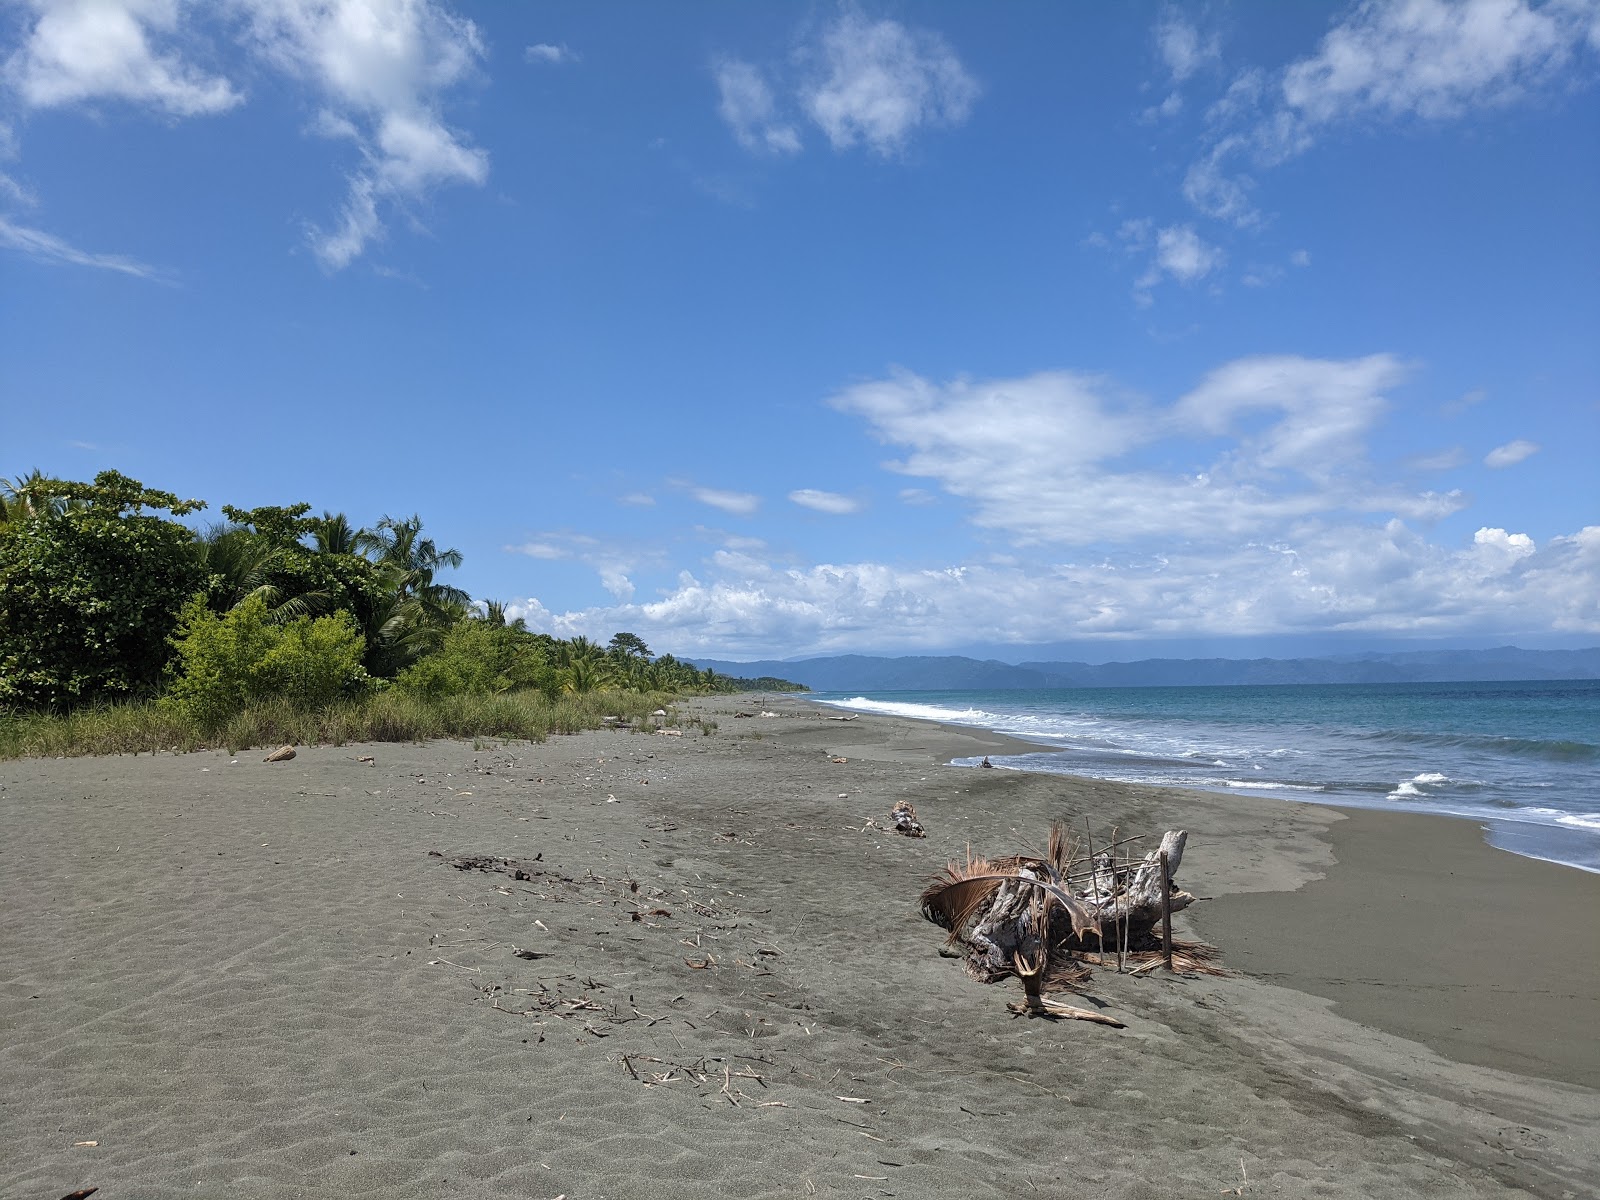 Playa Platanares'in fotoğrafı kahverengi kum yüzey ile